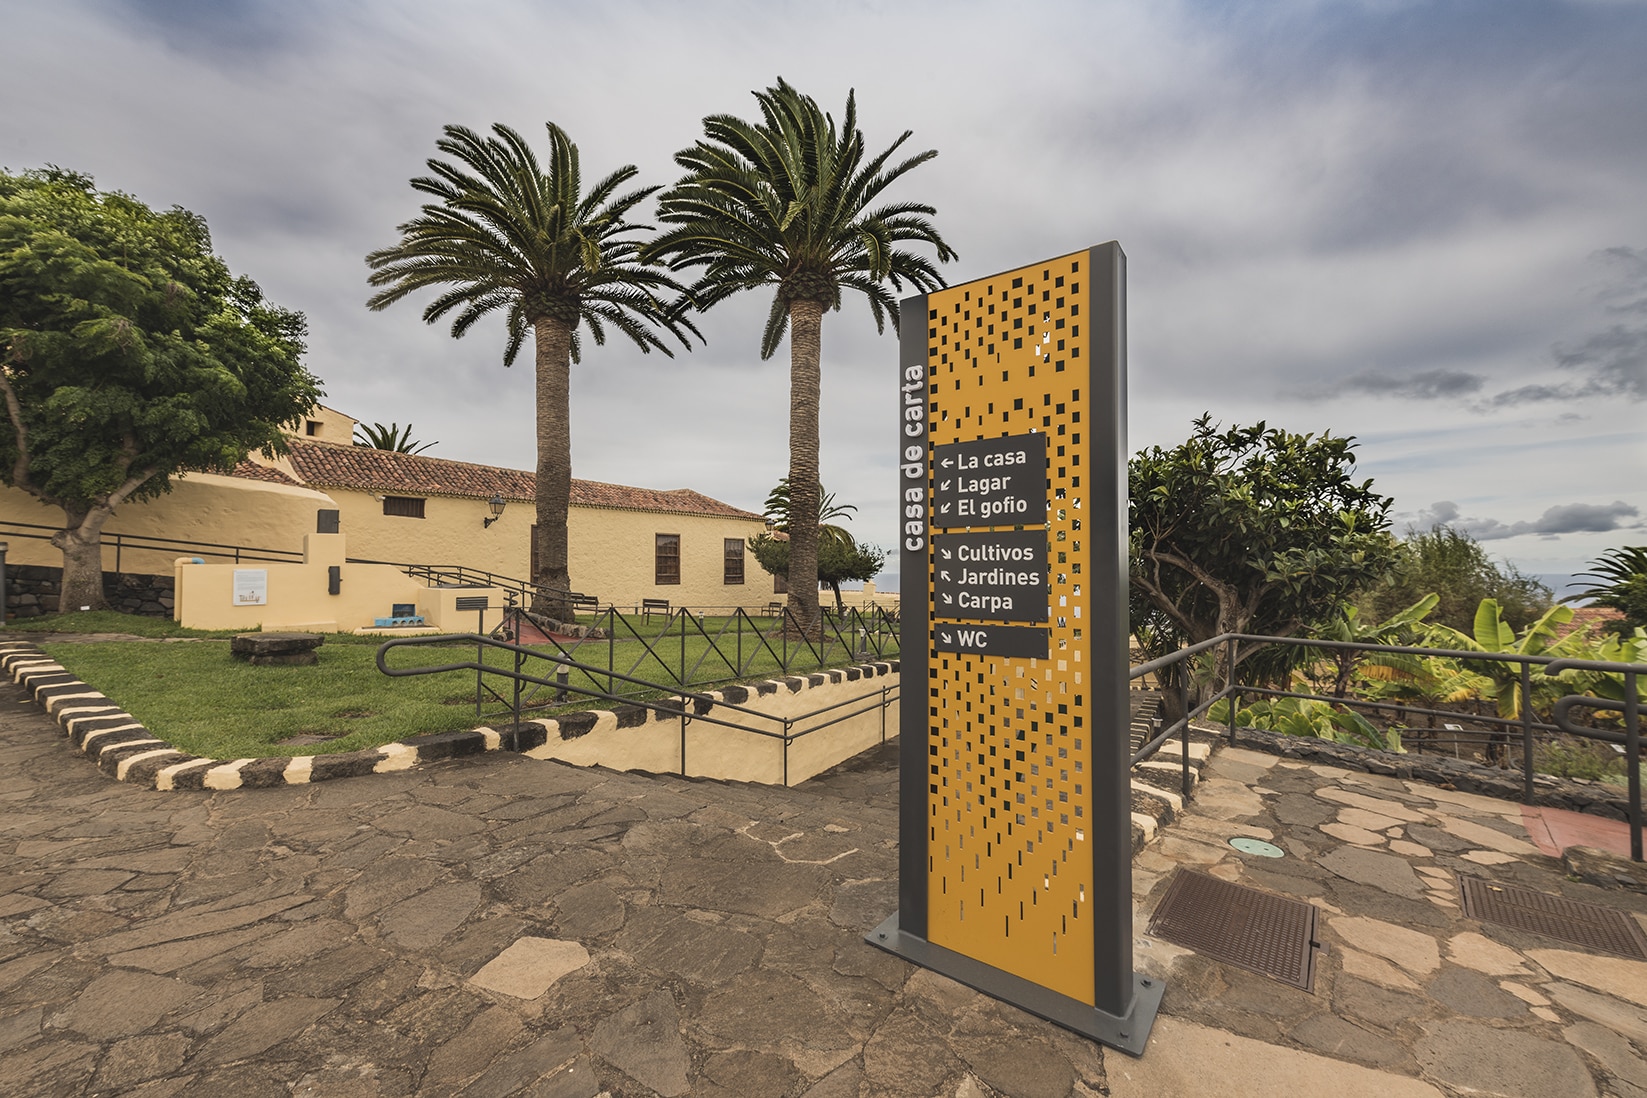 En este momento estás viendo La Casa de Carta de Valle de Guerra, Tenerife, habilita un nuevo espacio de ocio y encuentro al aire libre